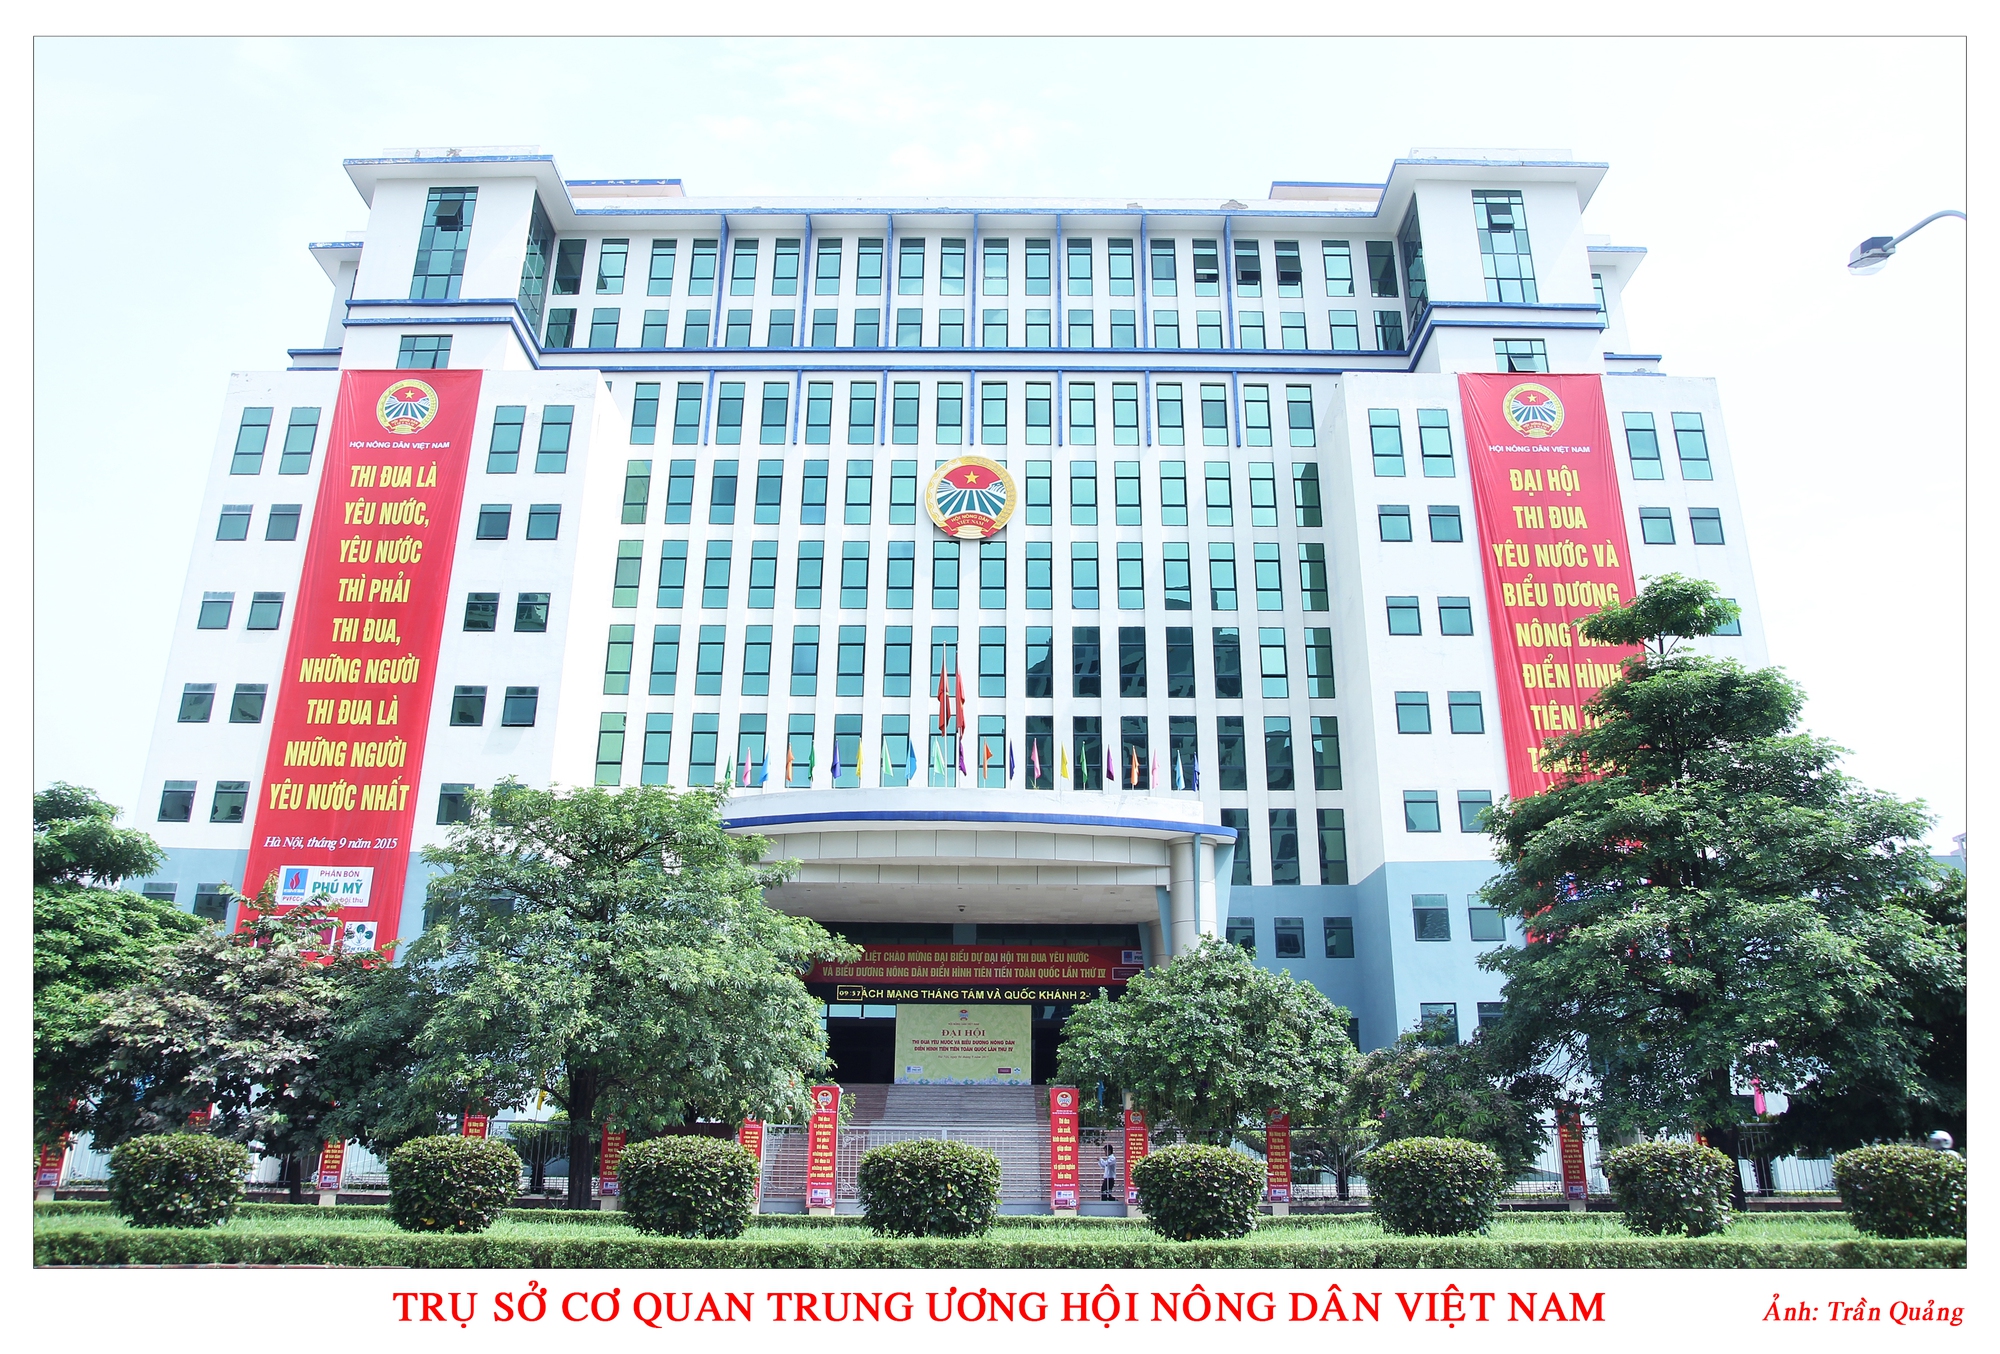 Thông báo tuyển dụng 20 công chức cho 5 lĩnh vực vị trí việc làm tại Cơ quan Trung ương Hội Nông dân Việt Nam - Ảnh 1.